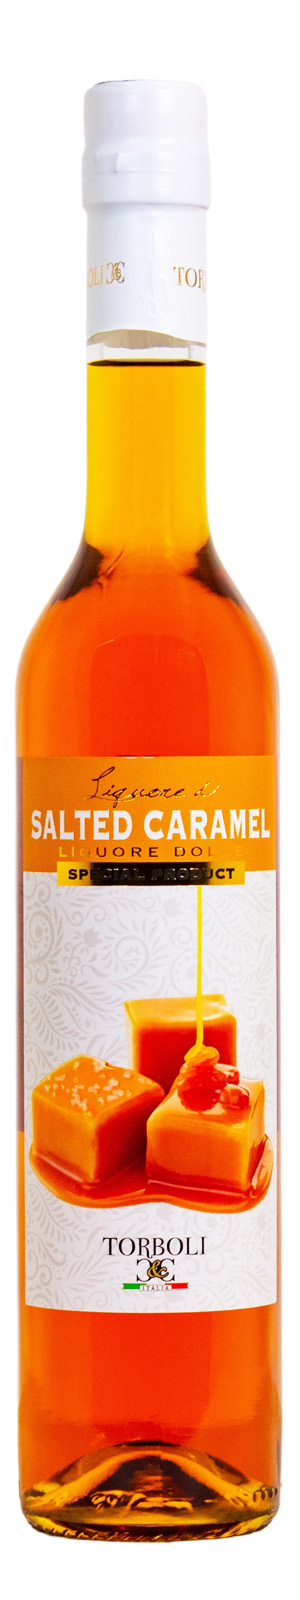 Torboli Salted Caramel - 0,5L 16,4% vol